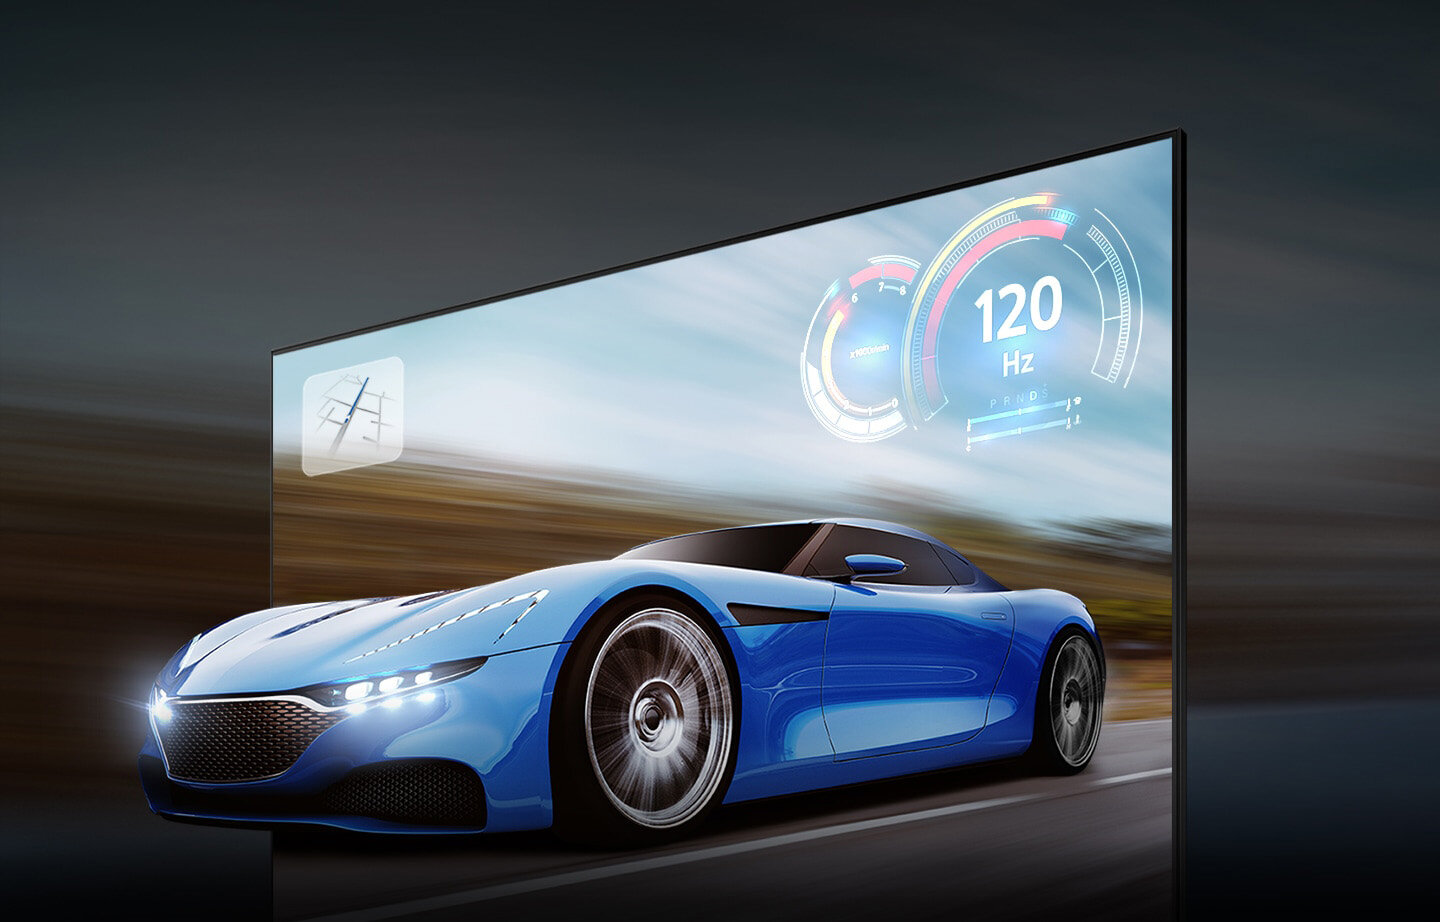 Ścigający się samochód wygląda o wiele wyraźniej na ekranie QLED niż na zwykłym ekranie dzięki Zaawansowanemu Upłynniaczowi Ruchu+ do 120 Hz w 4K. Q70BATXXH